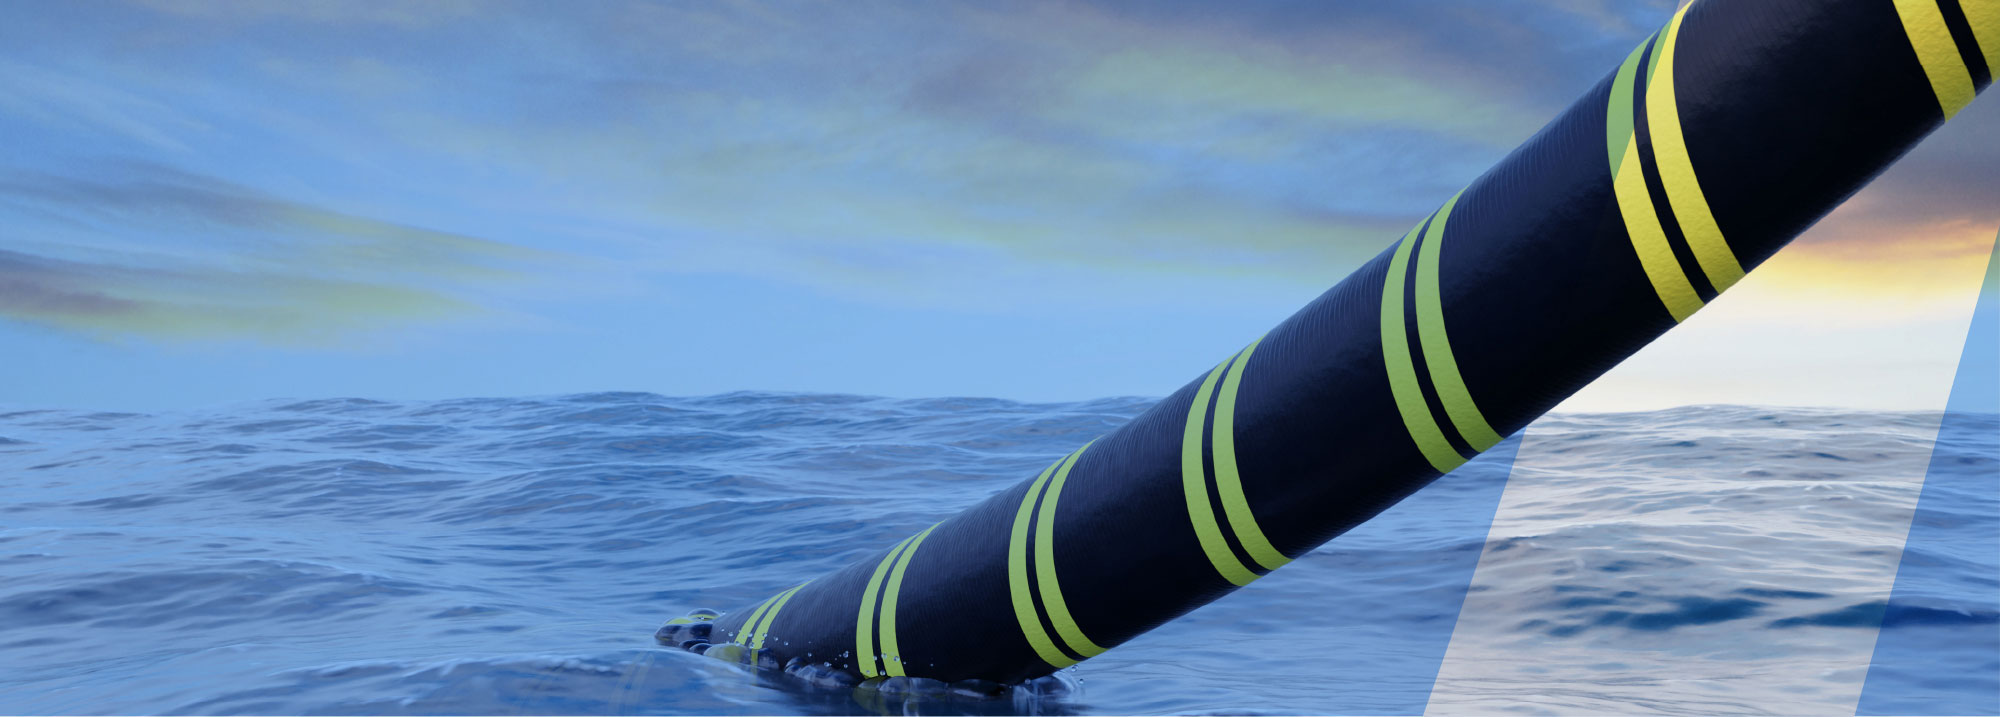 Megaconstrucciones Así Son Los Cables Submarinos Que Llevan Energía A